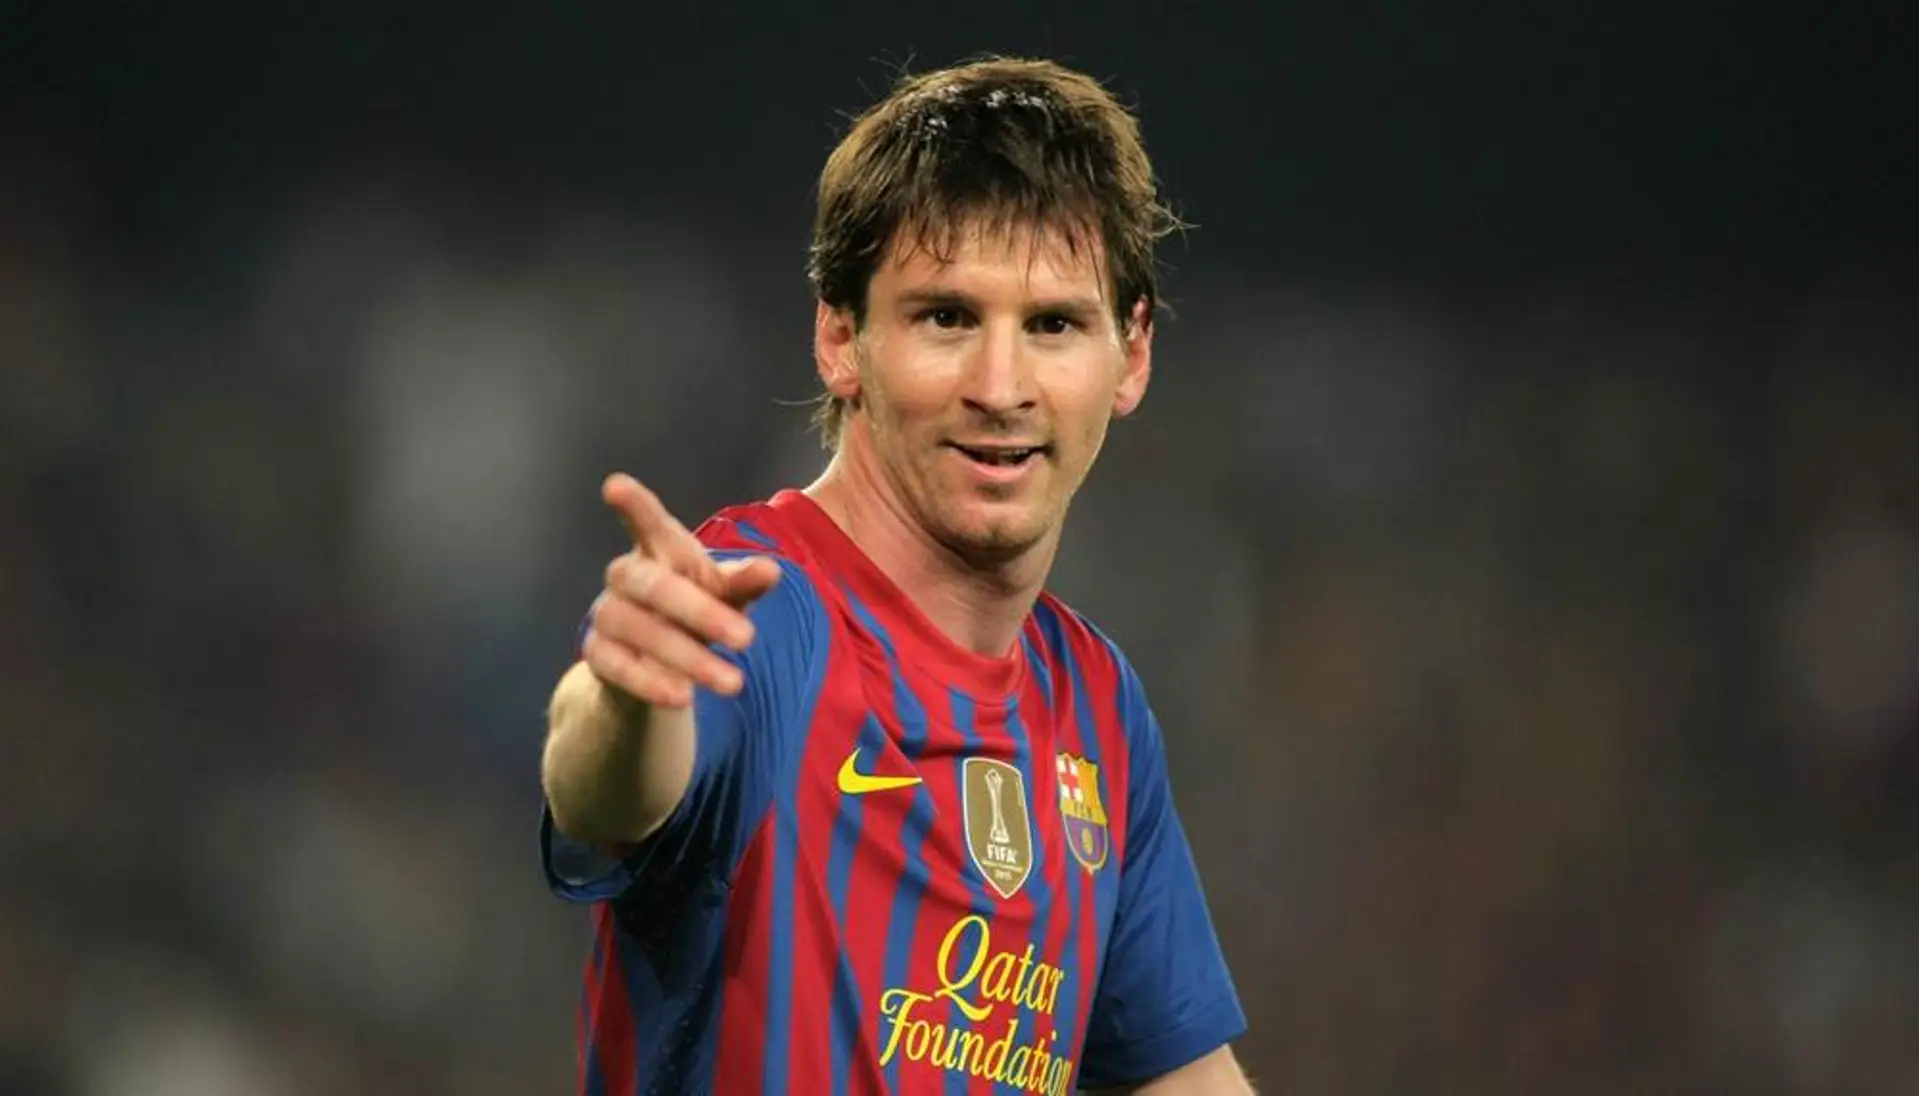 Messi y los momentos claves de su carrera: goleada al Bayer Leverkusen